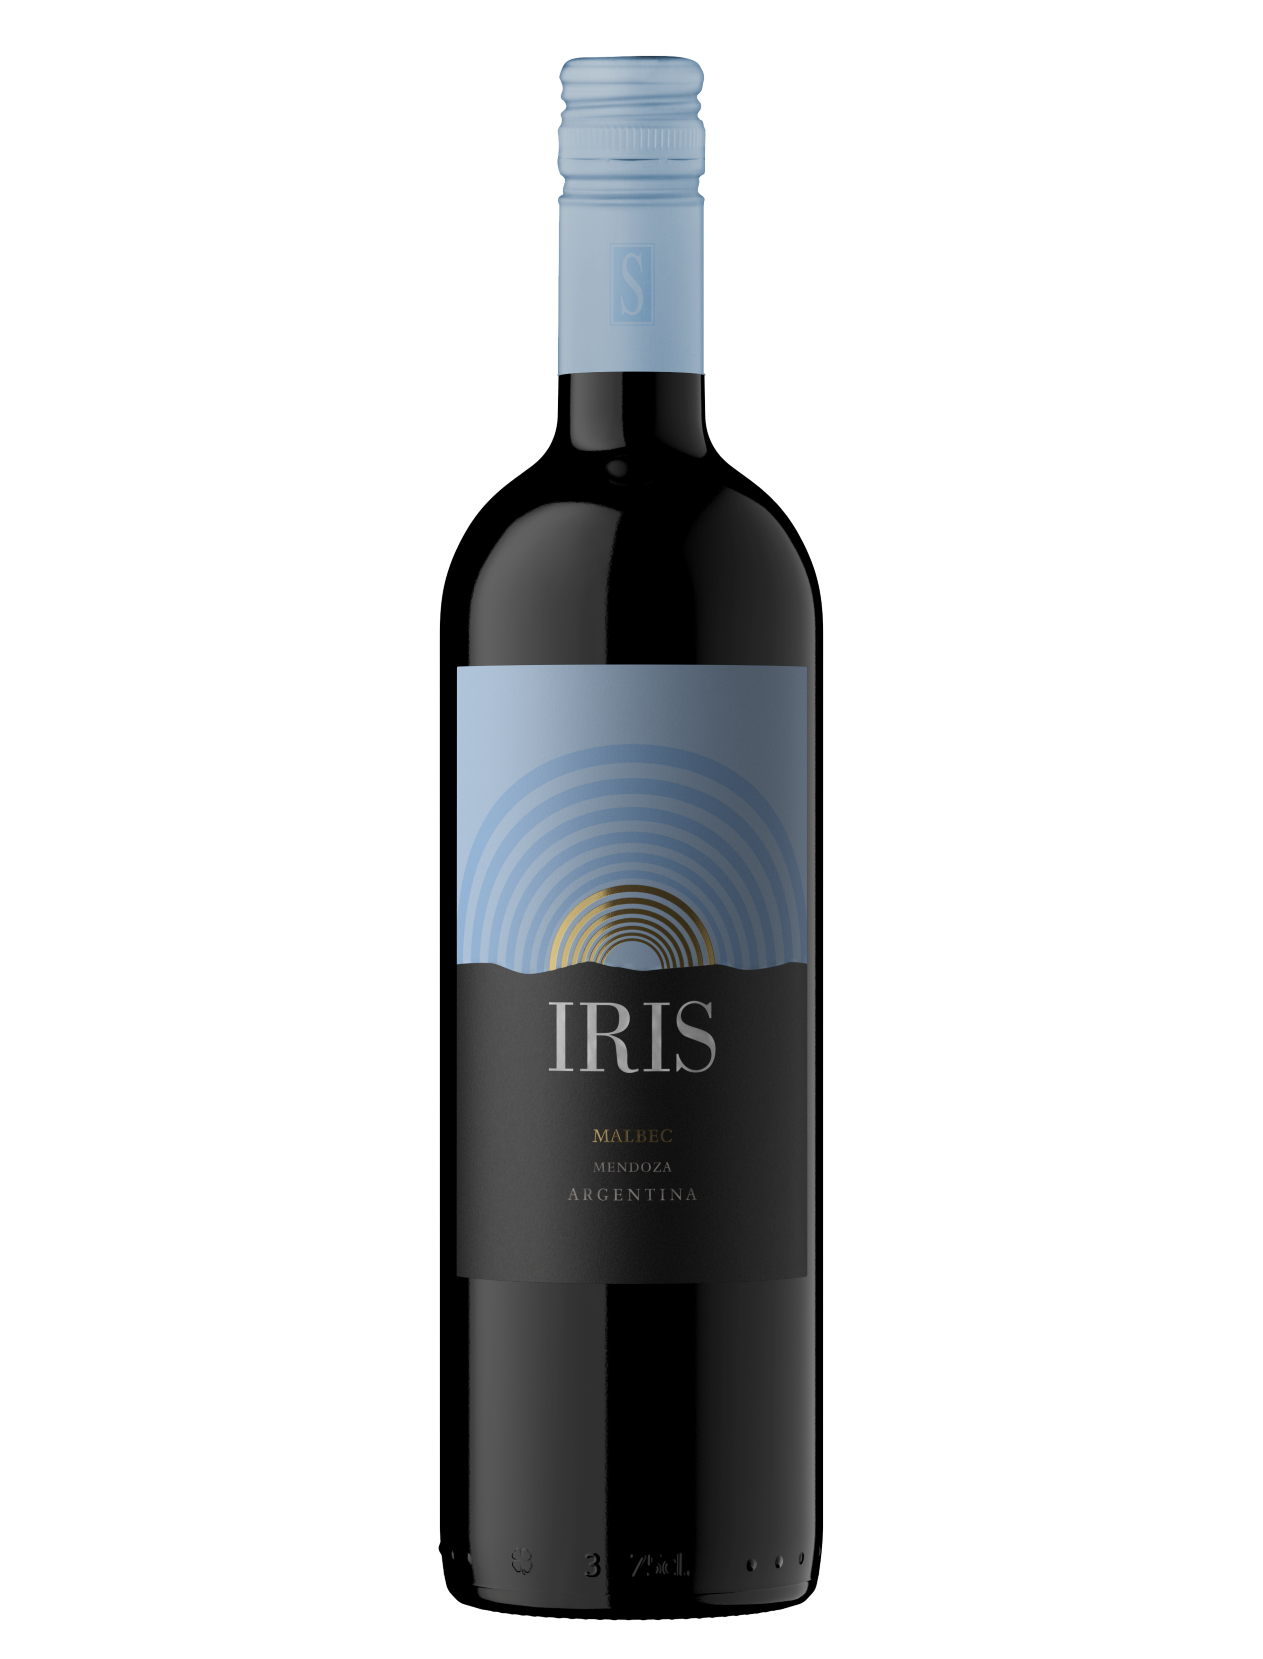 Iris rode wijn Malbec uit Argentinië